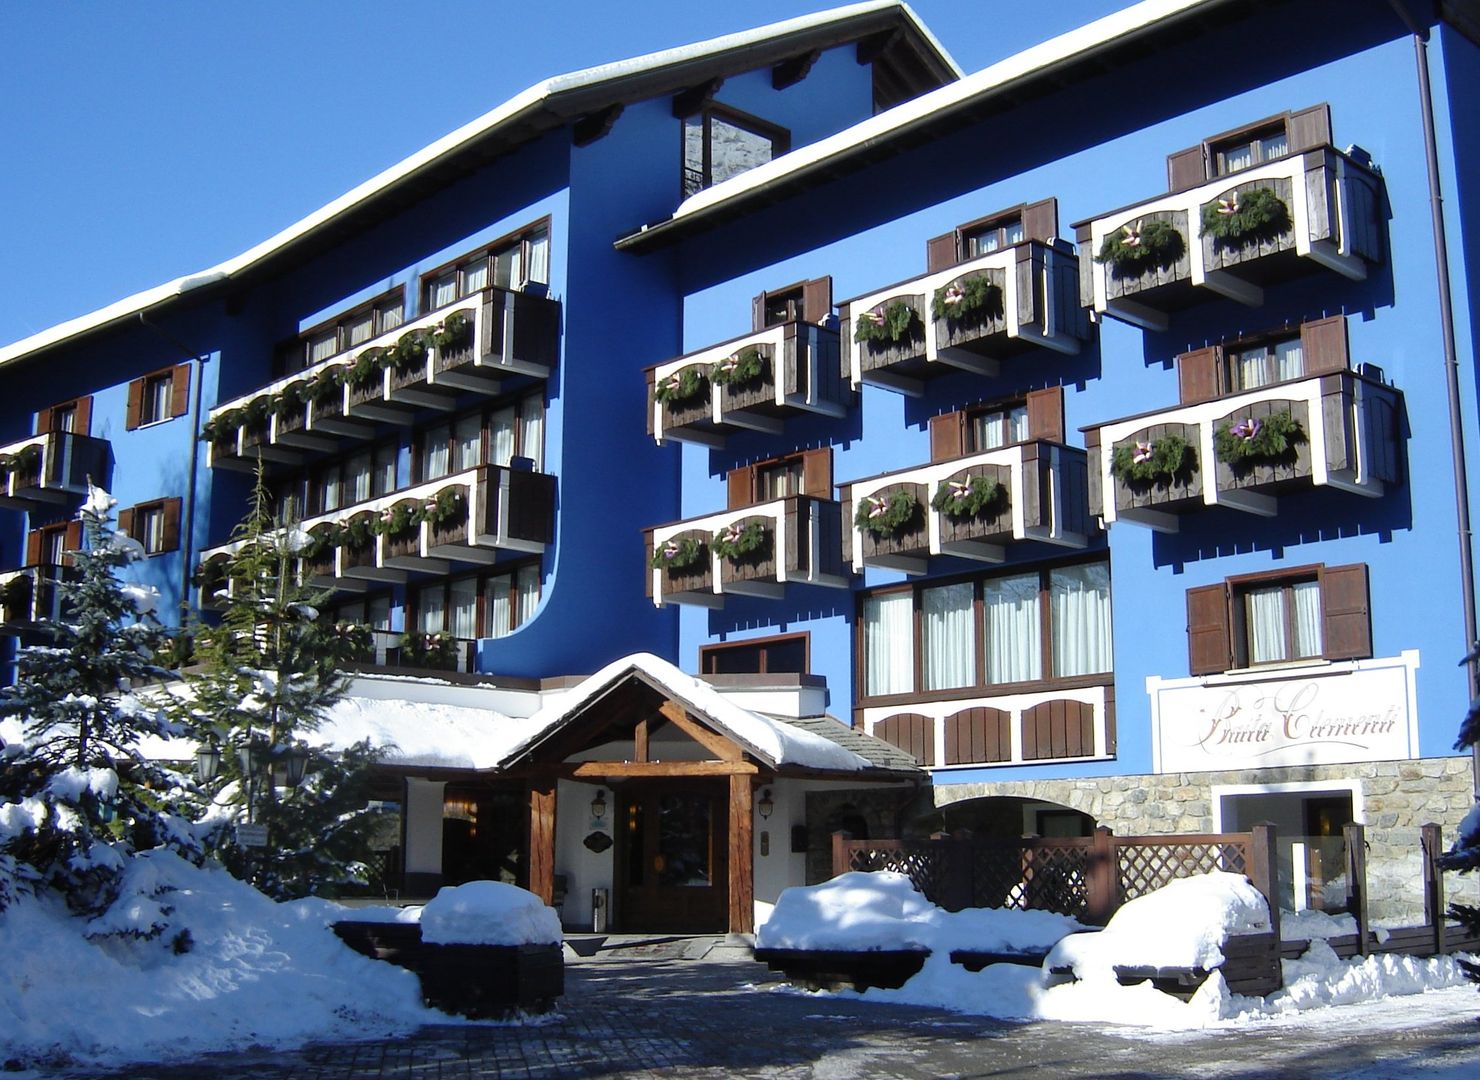 Meer info over Hotel Baita Clementi  bij Wintertrex